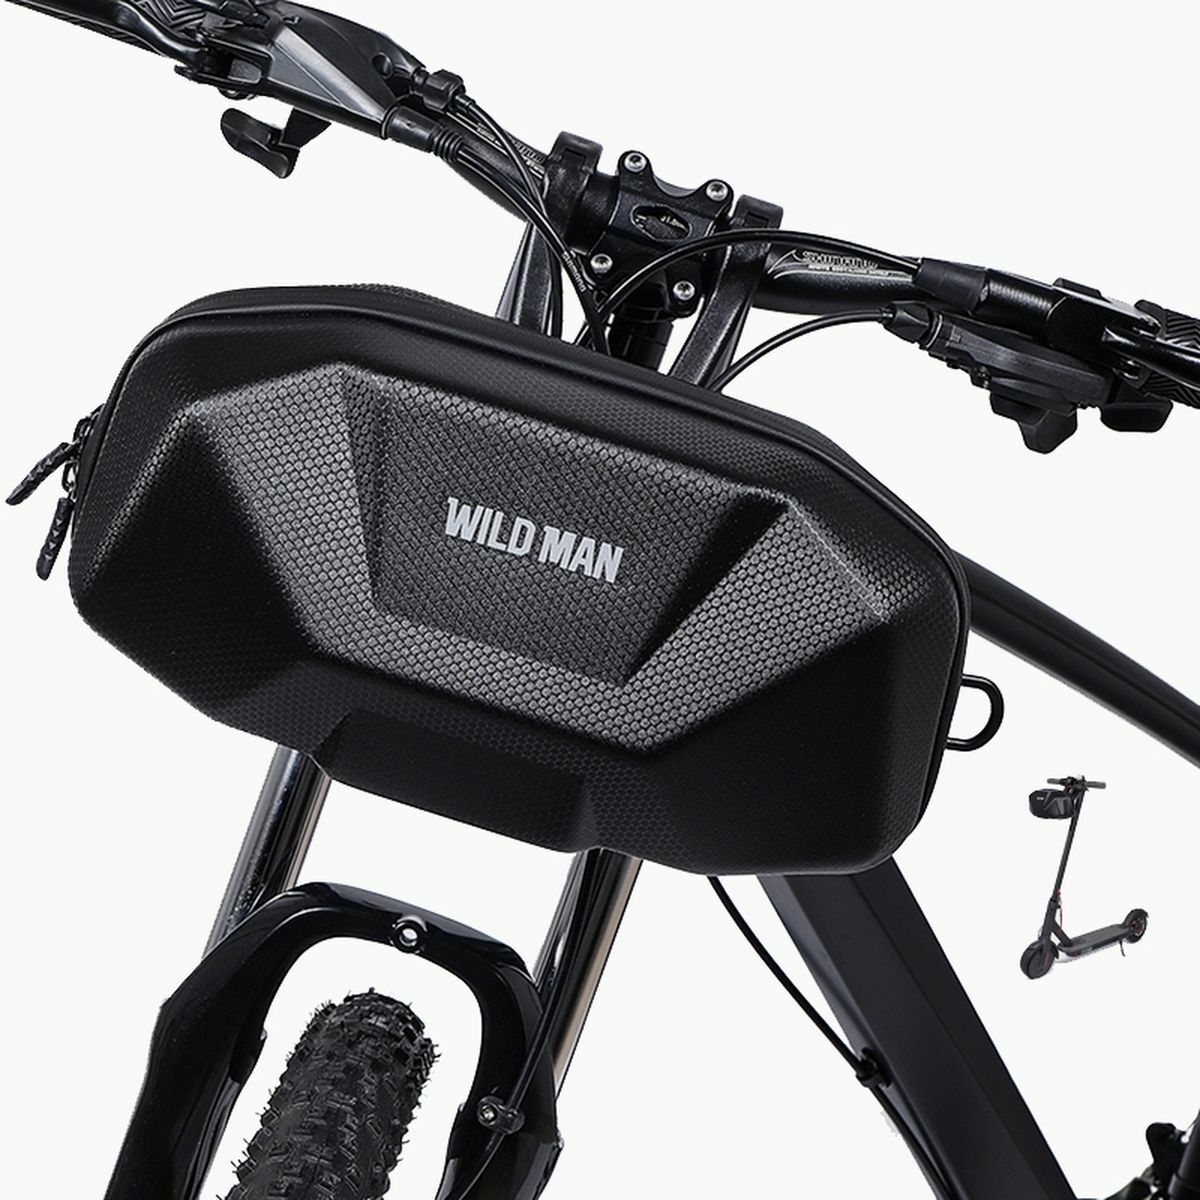 WILDMAN Bicycle Bag X9 kormányra szerelhető, vízálló, merevfalú kereékpáros táska, 1L, fekete WILDMAN-X9-3,5L